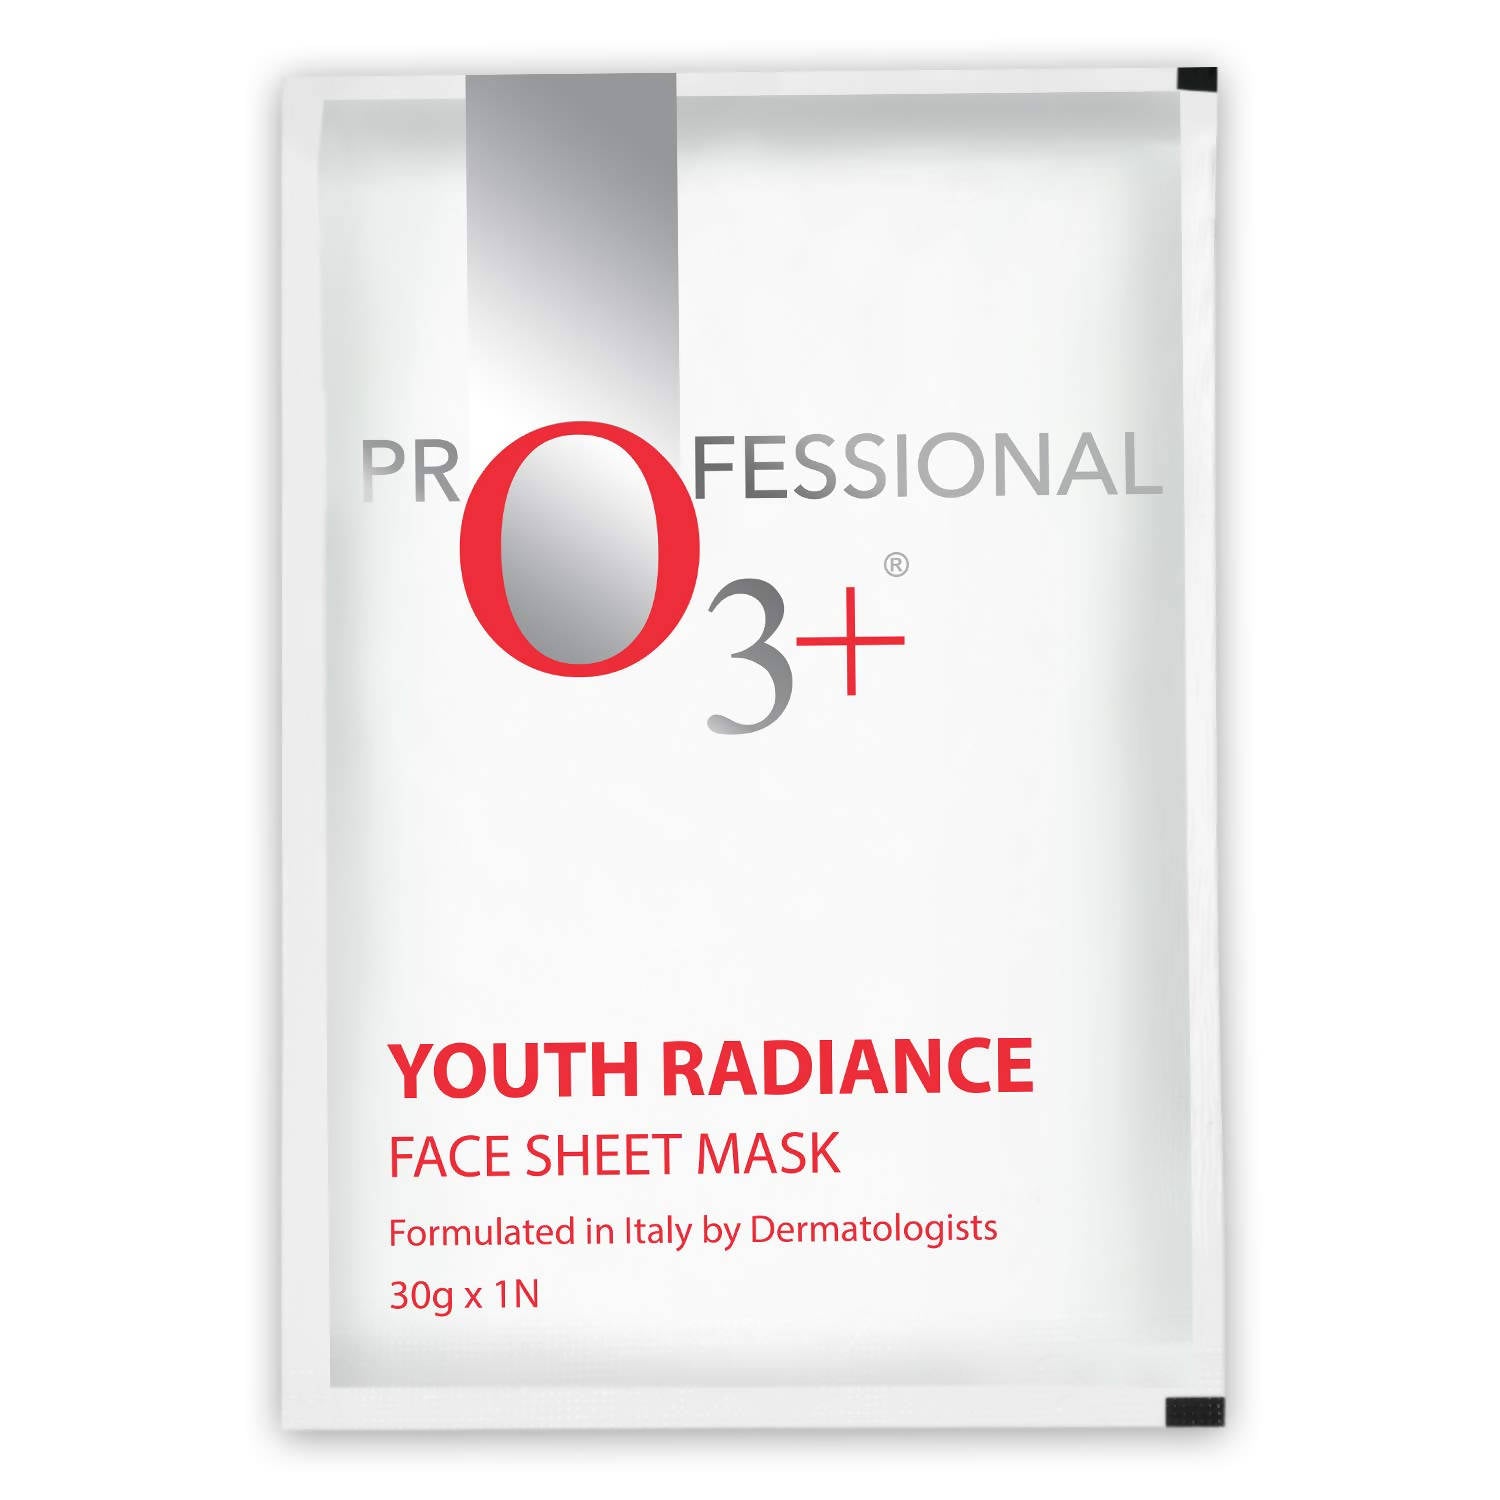 Professional O3+ Youth Radiance Face Sheet Mask